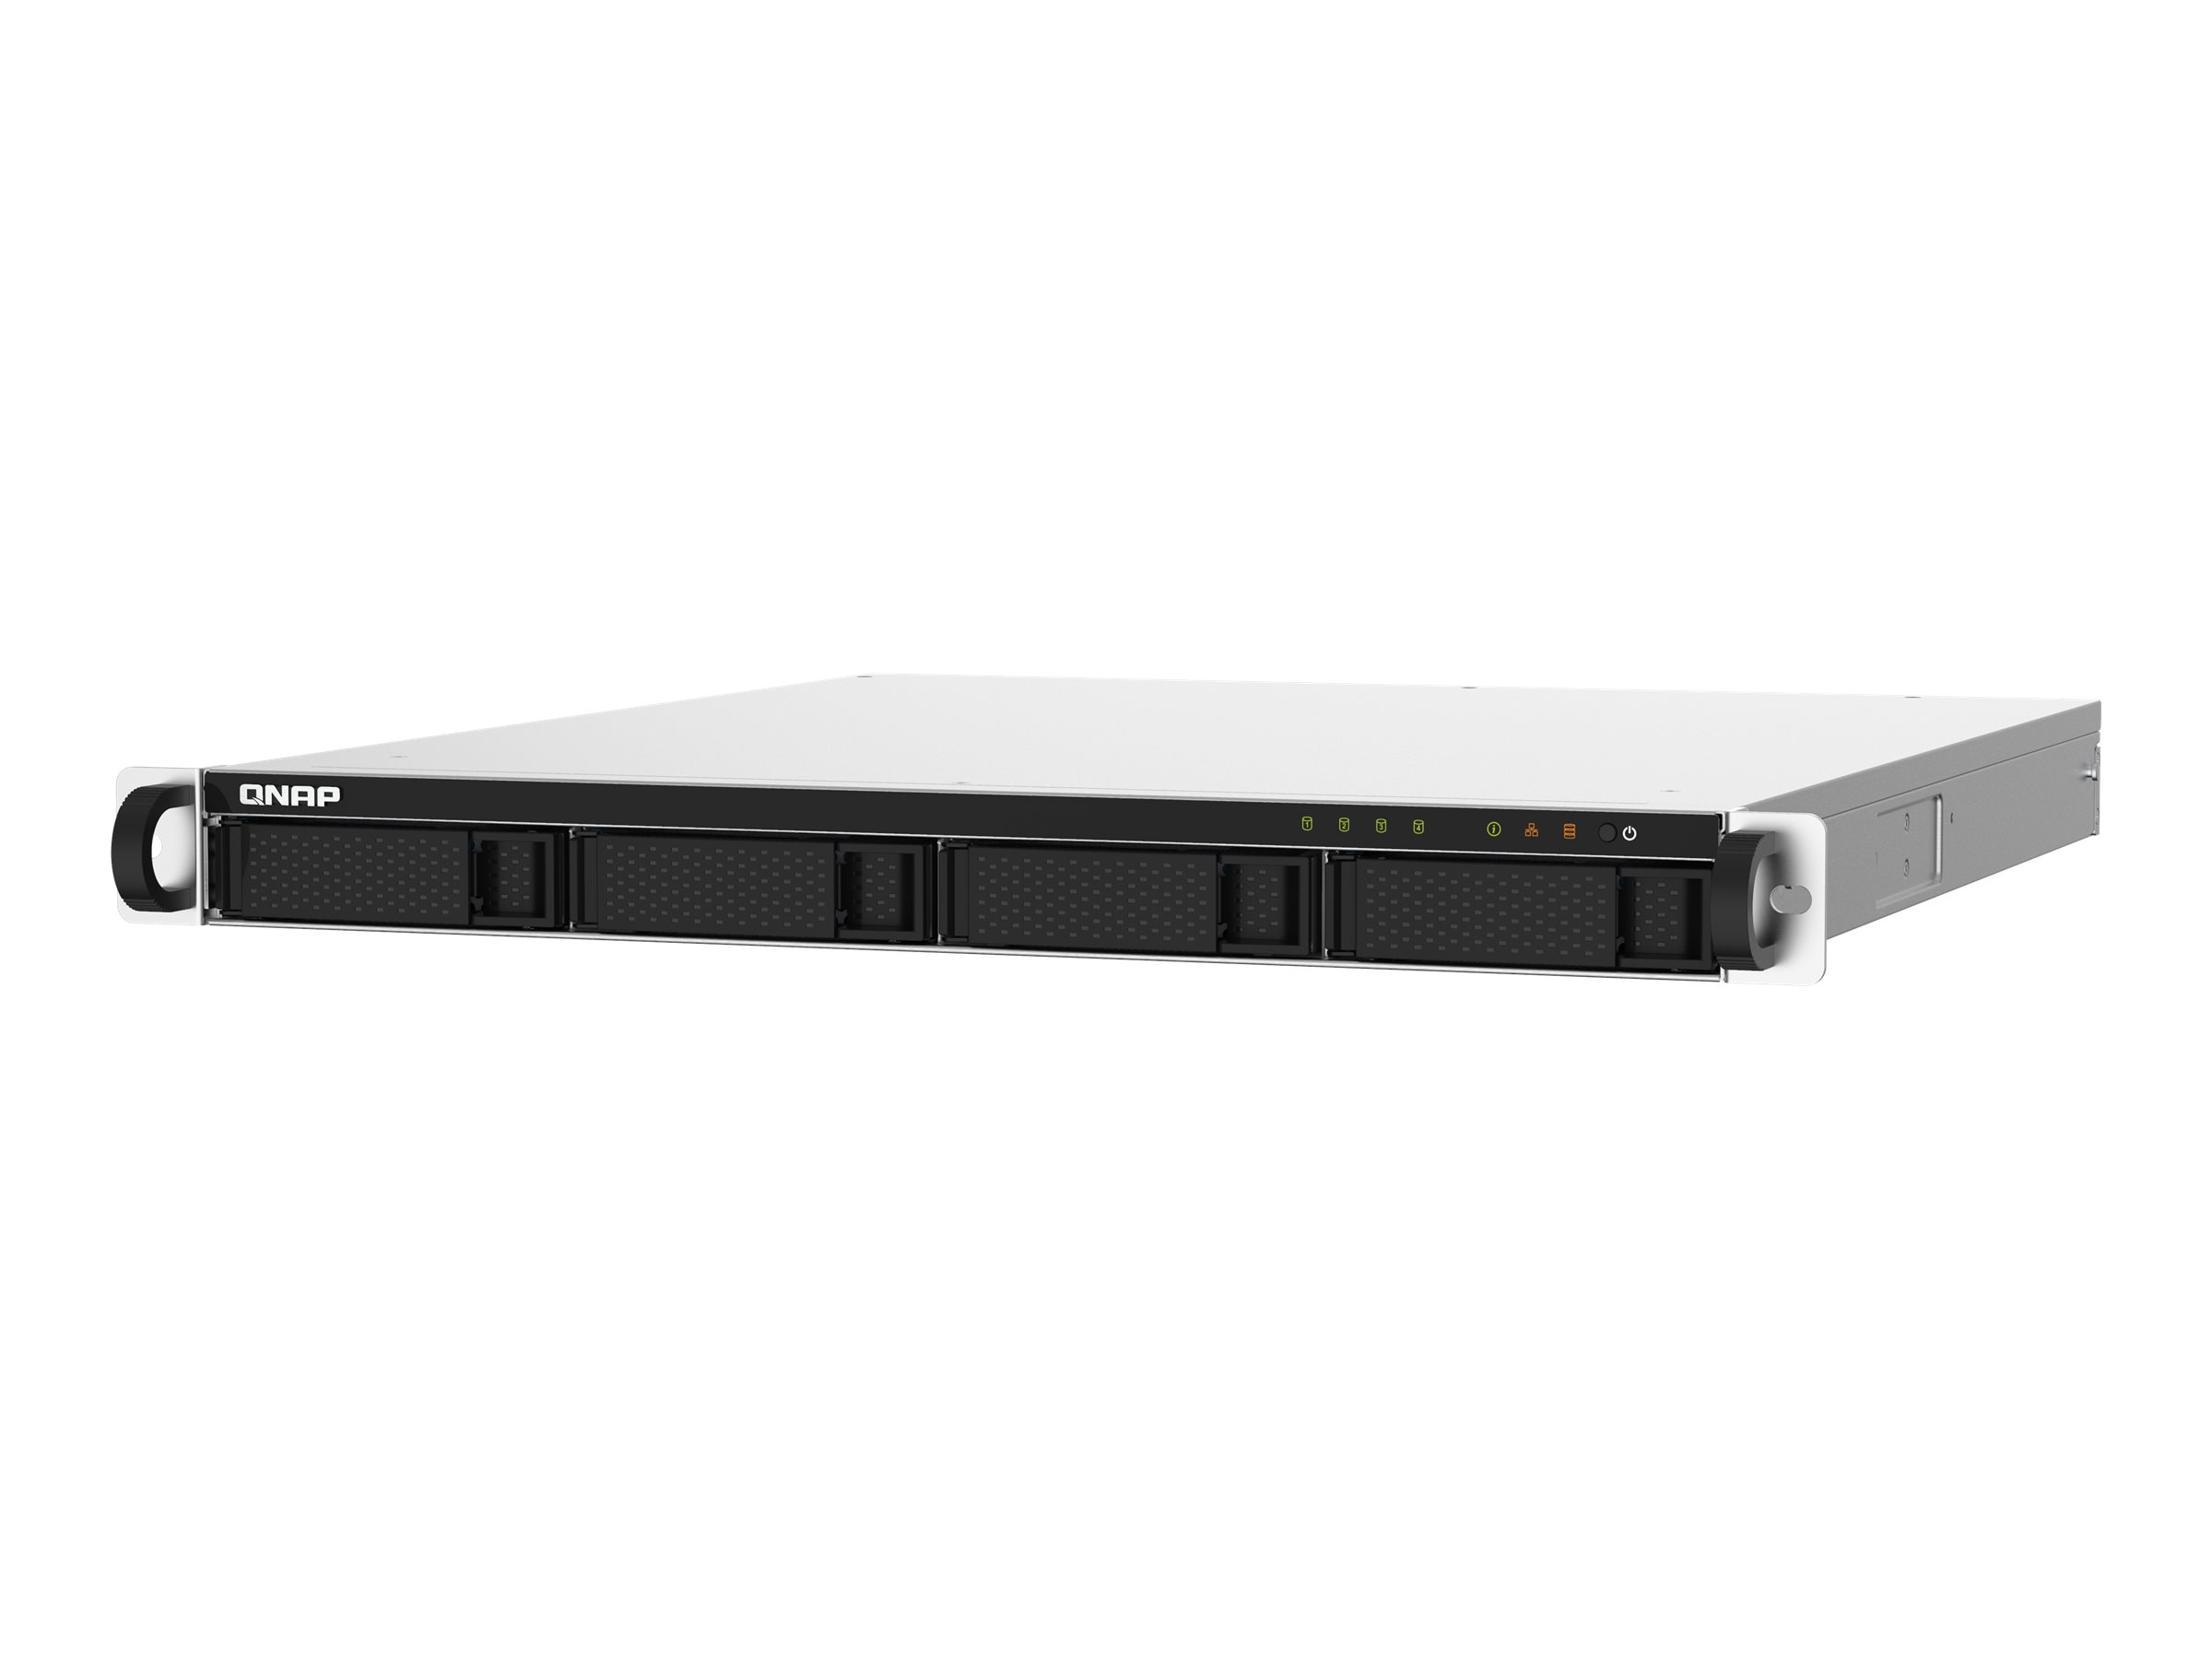 QNAP TS-432PXU-RP - NAS-Server - 4 Schächte - Rack - einbaufähig - SATA 6Gb/s - RAID 0, 1, 5, 6, 10, JBOD - RAM 2 GB - Gigabit Ethernet / 2.5 Gigabit Ethernet / 10 Gigabit Ethernet - iSCSI Support - 1U